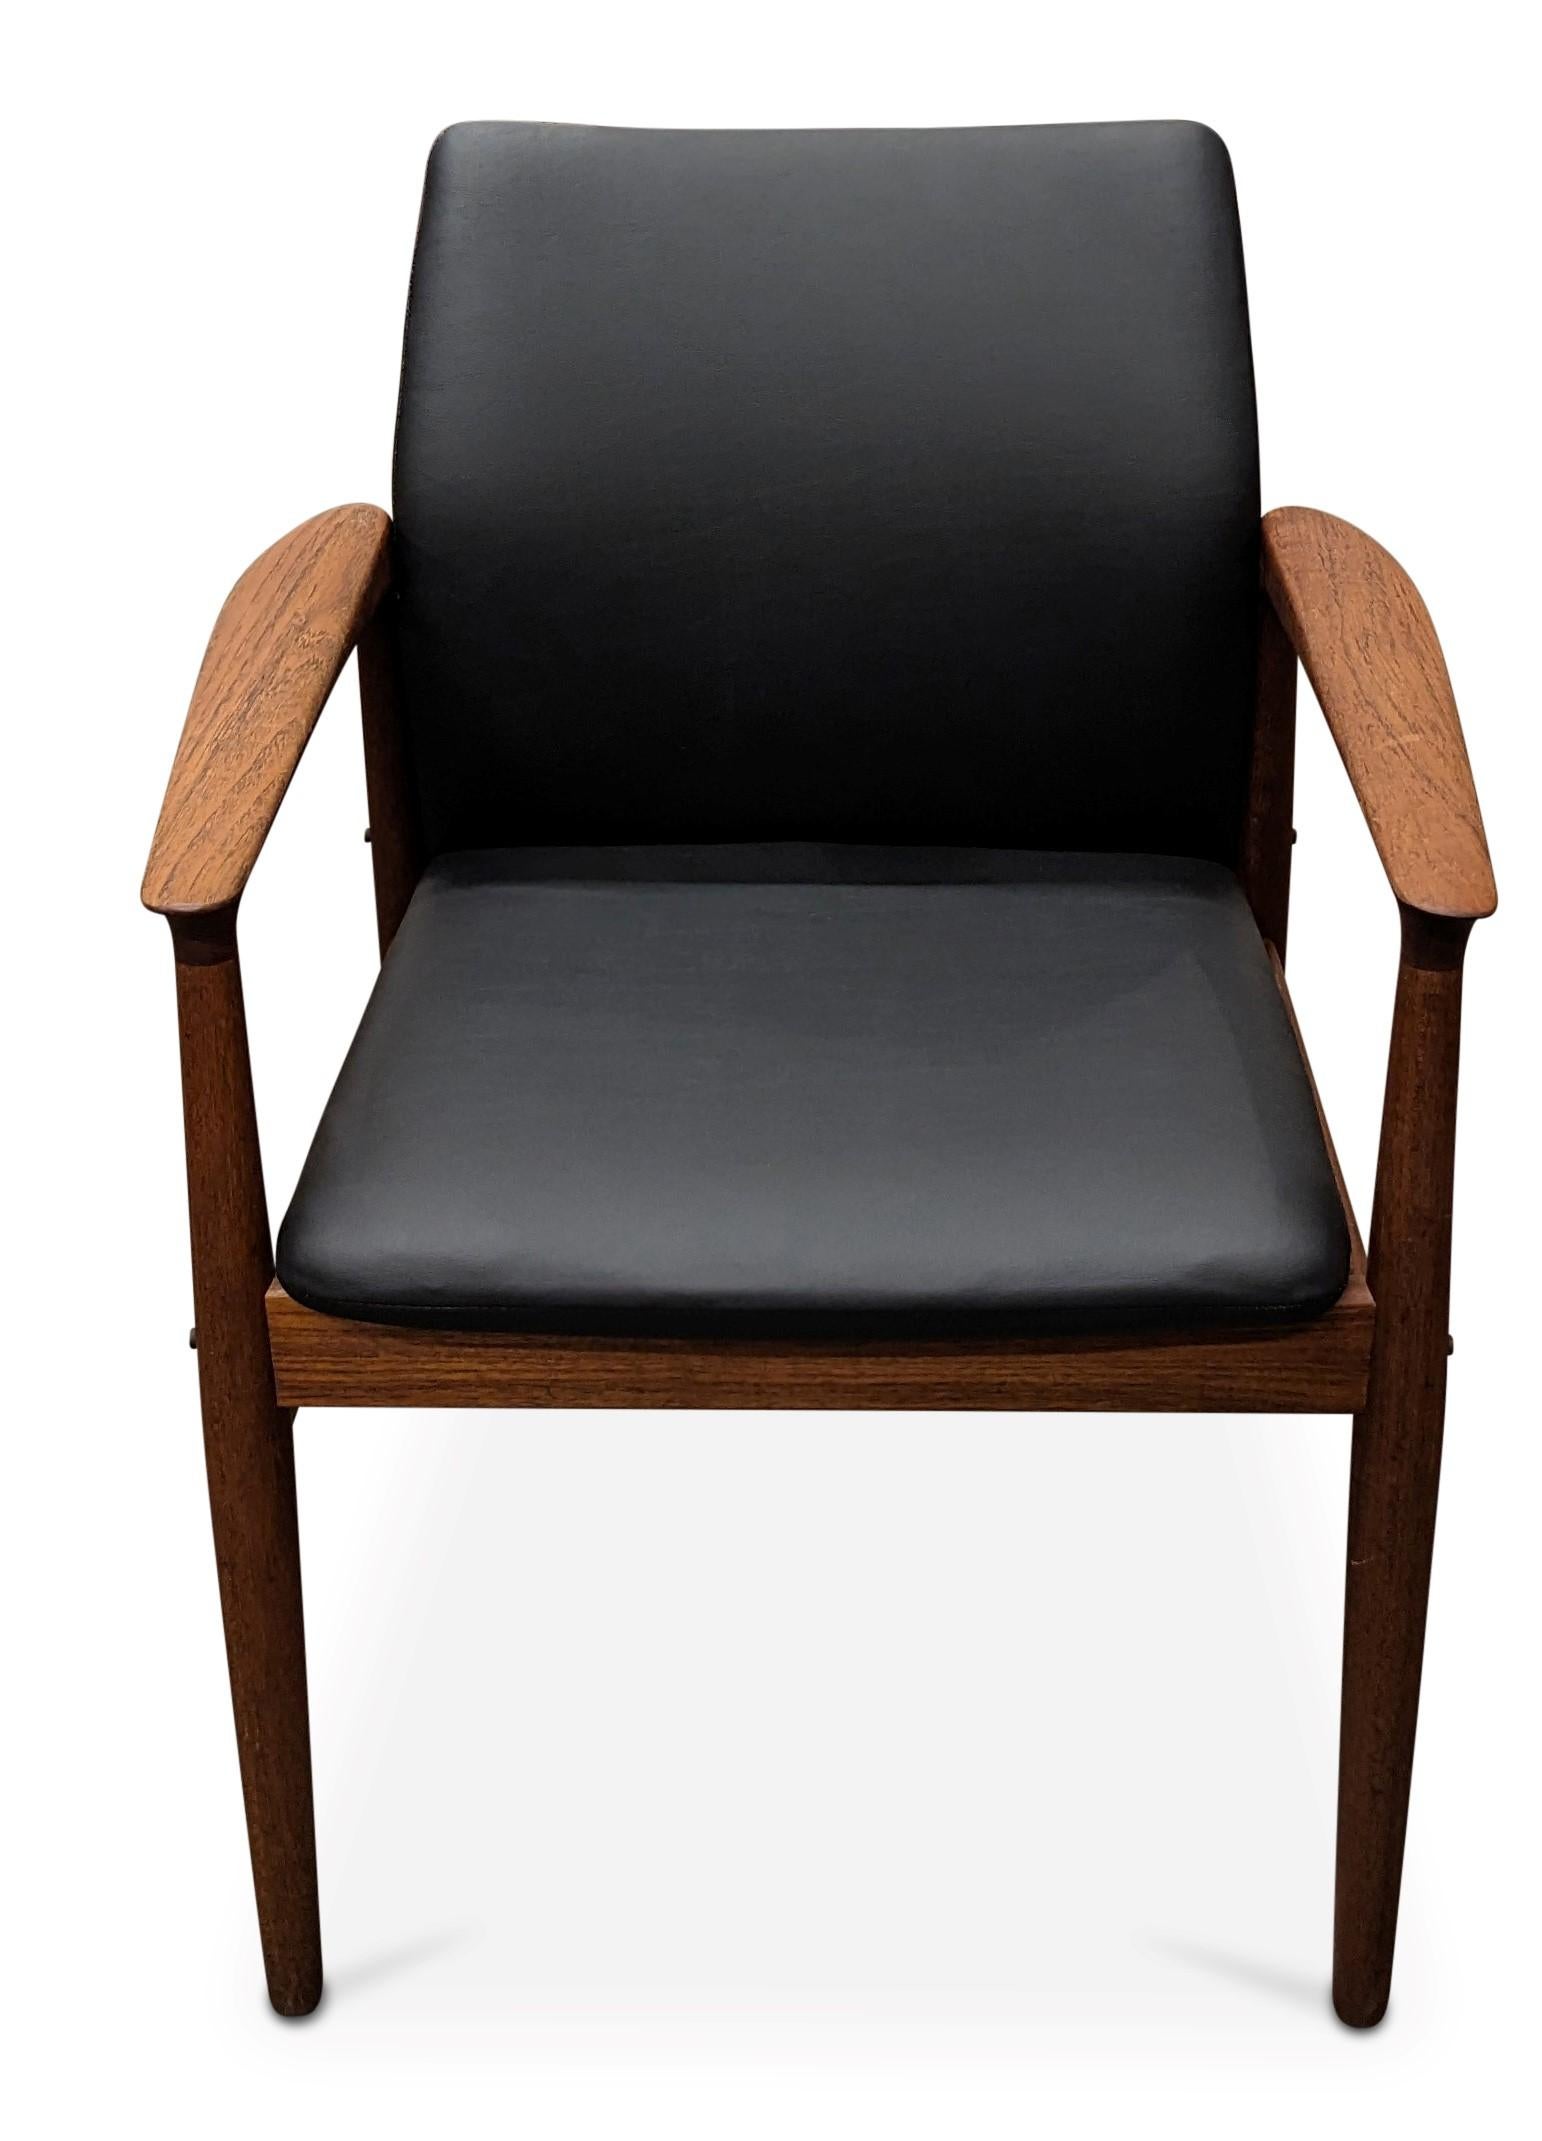 Scandinavian Modern Vintage Danish Mid Century Grethe Jalk for Glostrup Teak Chair - 082314